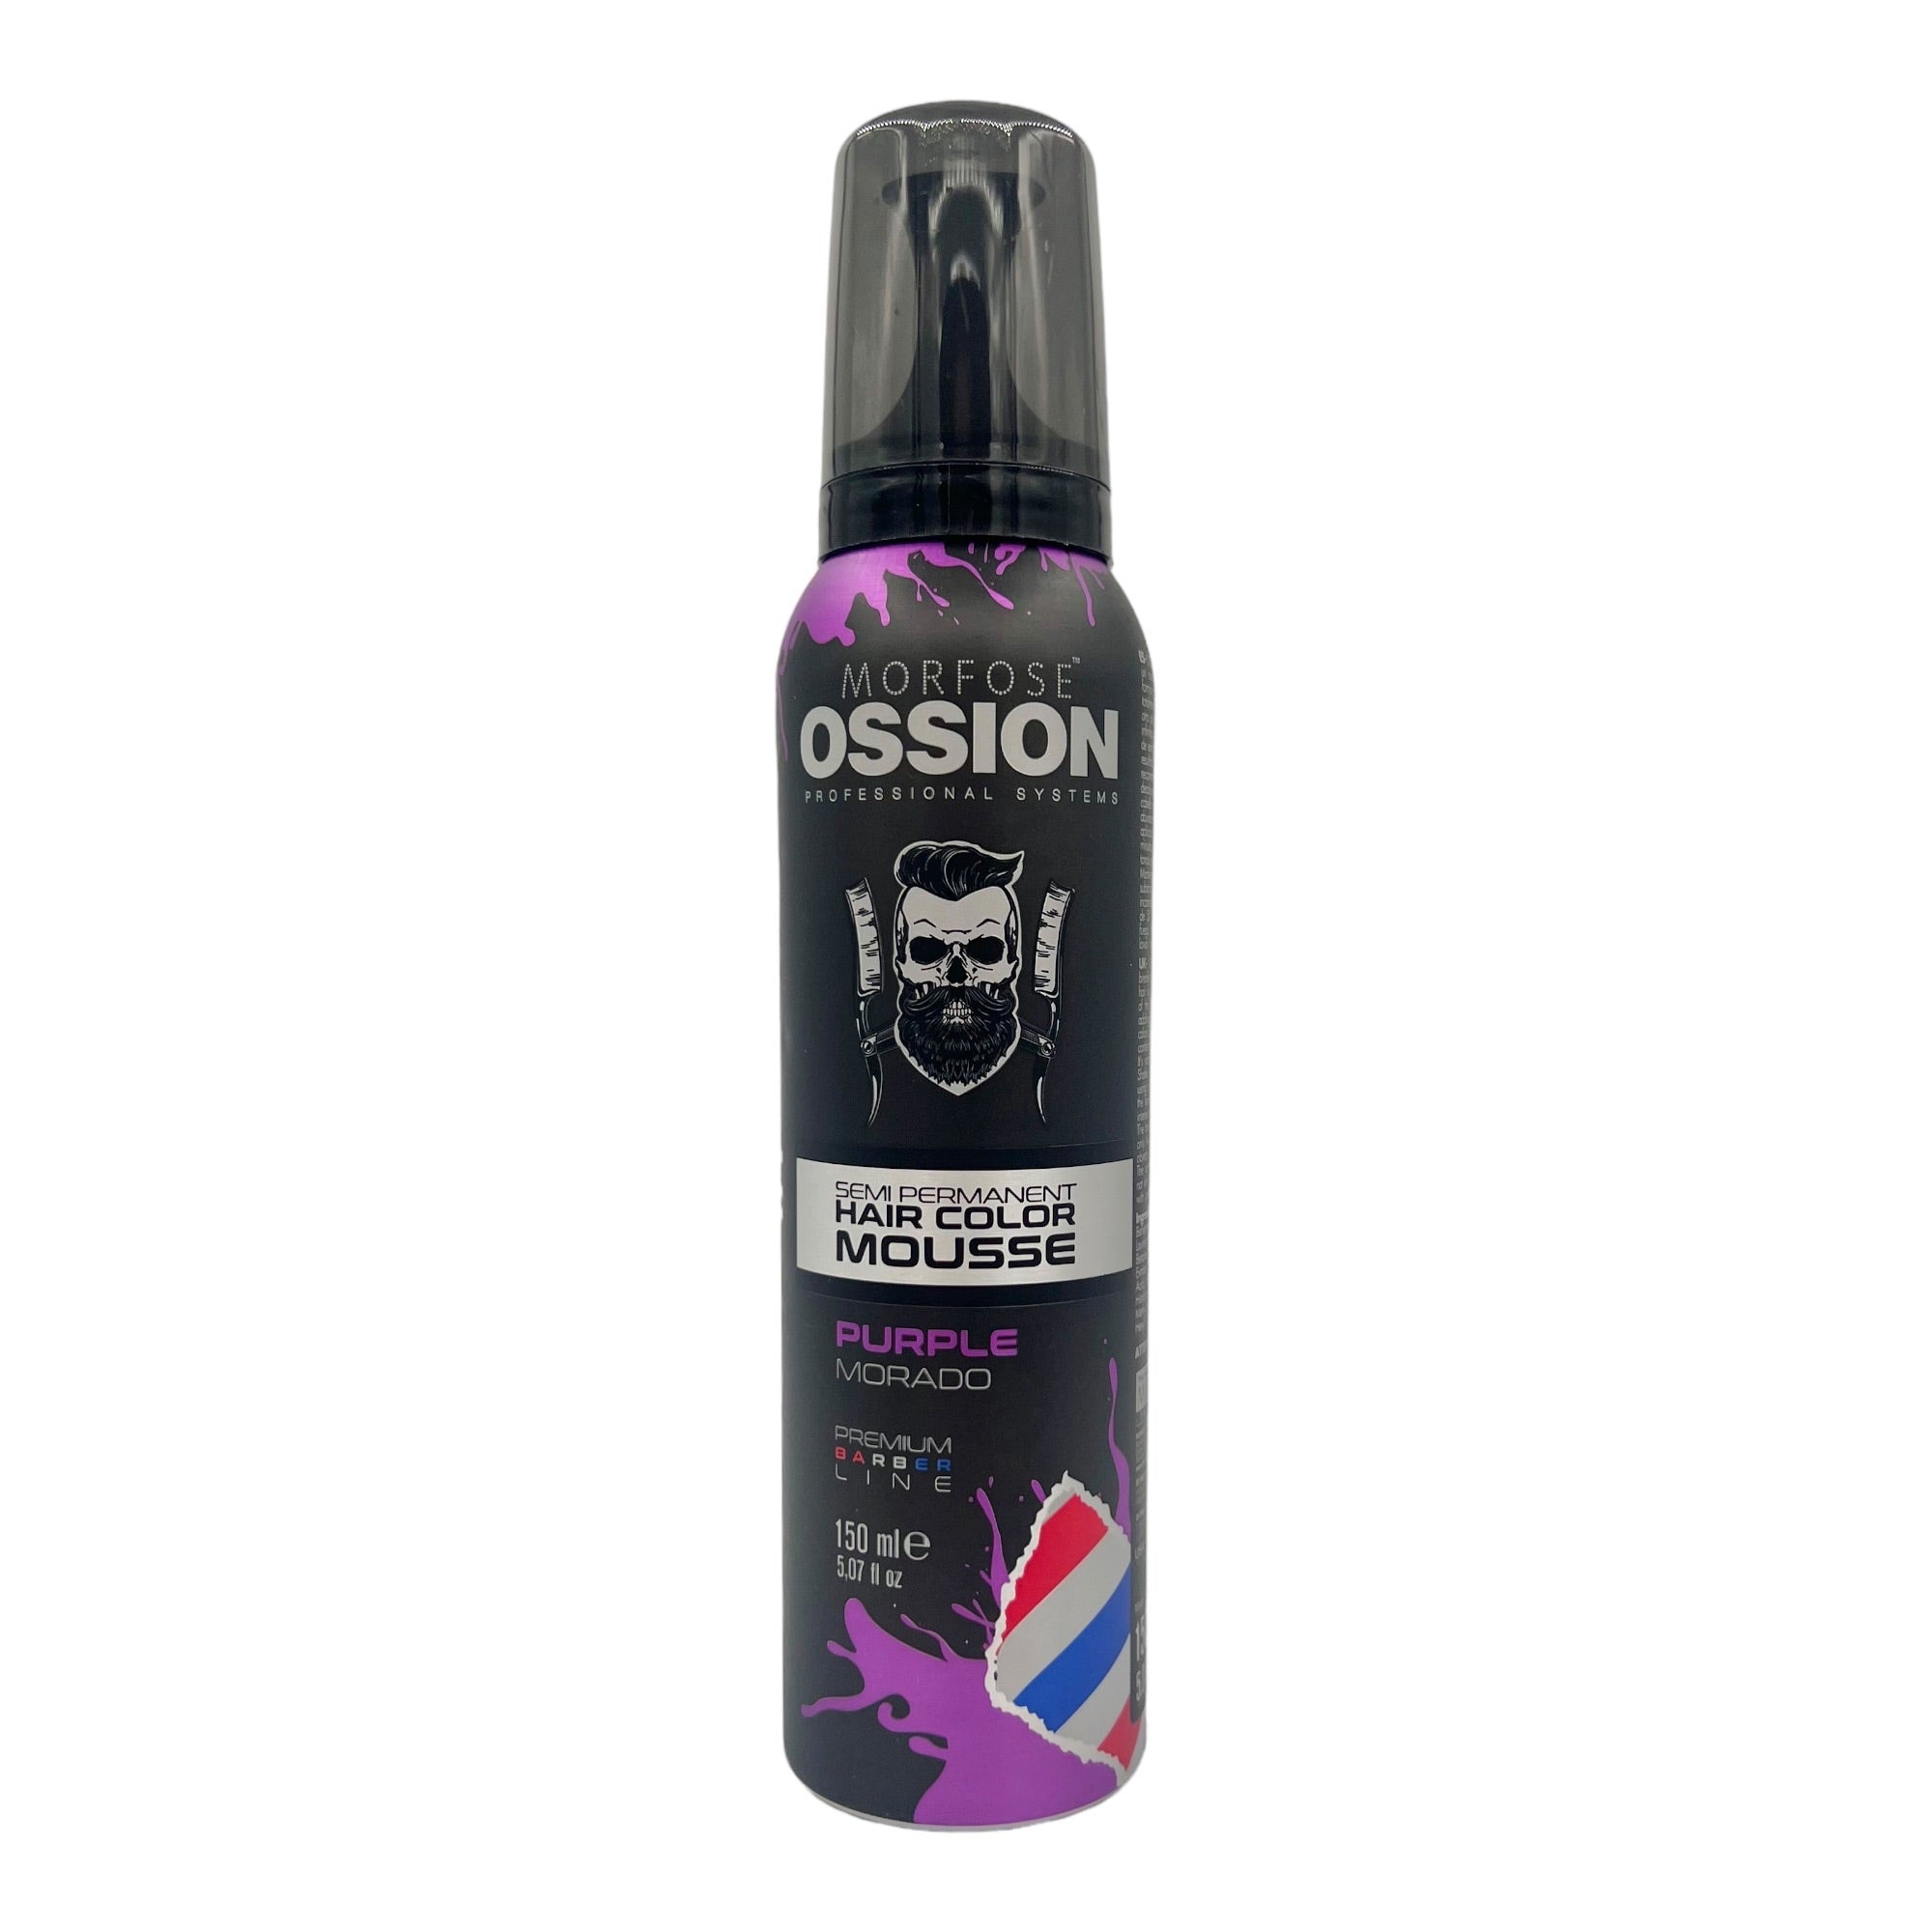 Morfose - Ossion Semi Permanent Hair Colour Mousse Purple 150ml